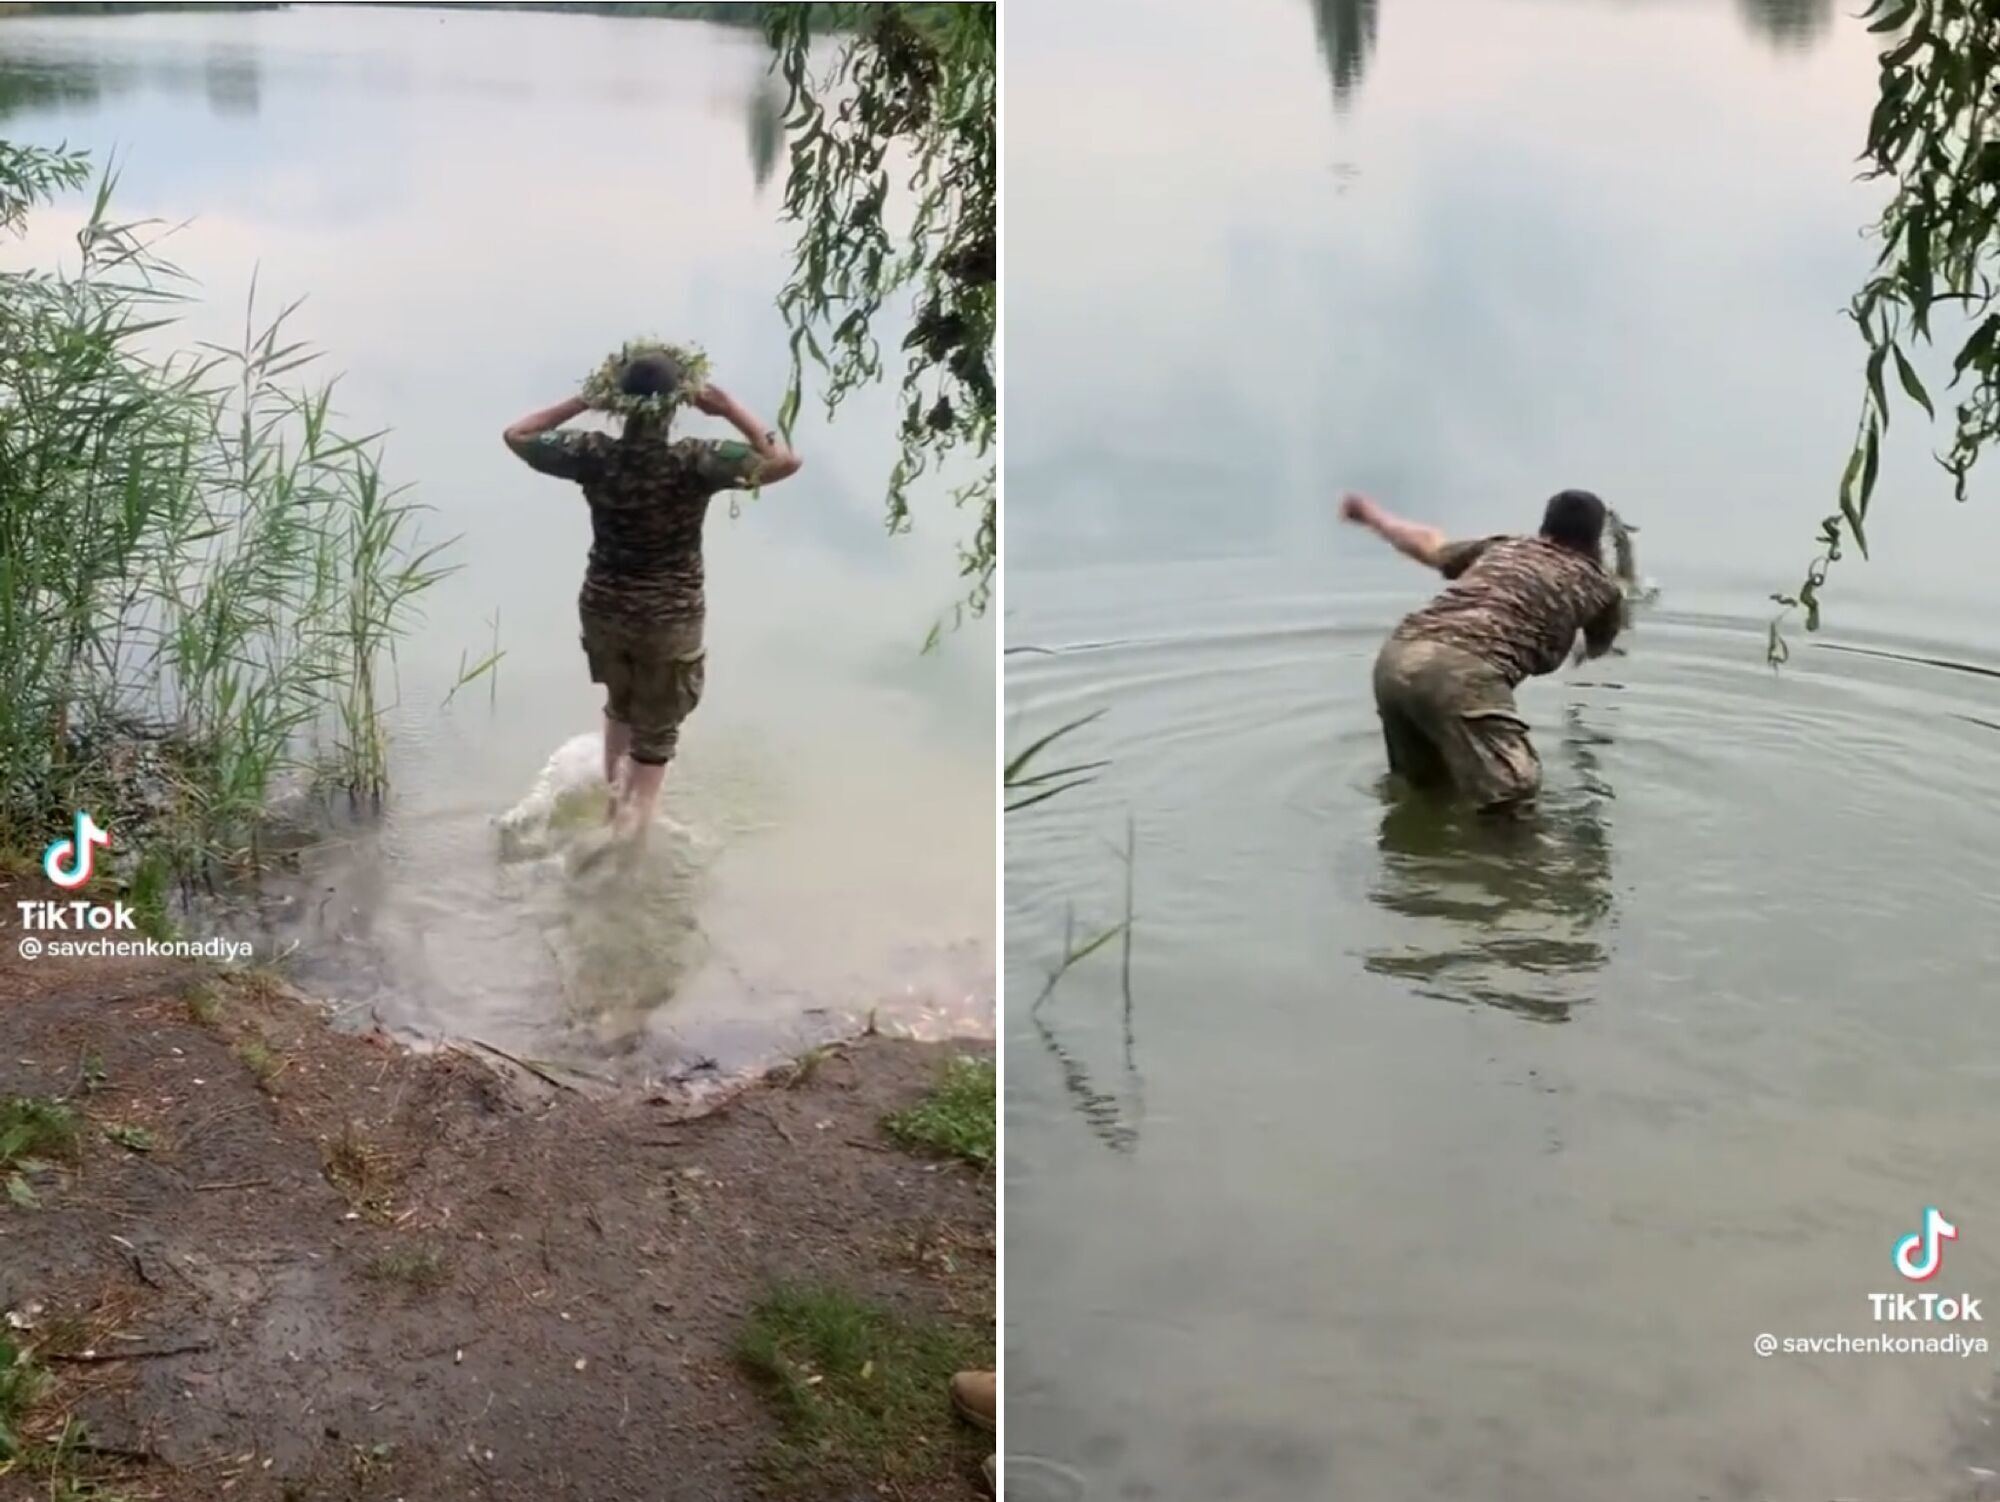 Савченко у військовій формі залізла в річку і пустила за водою вінок. Він не поплив